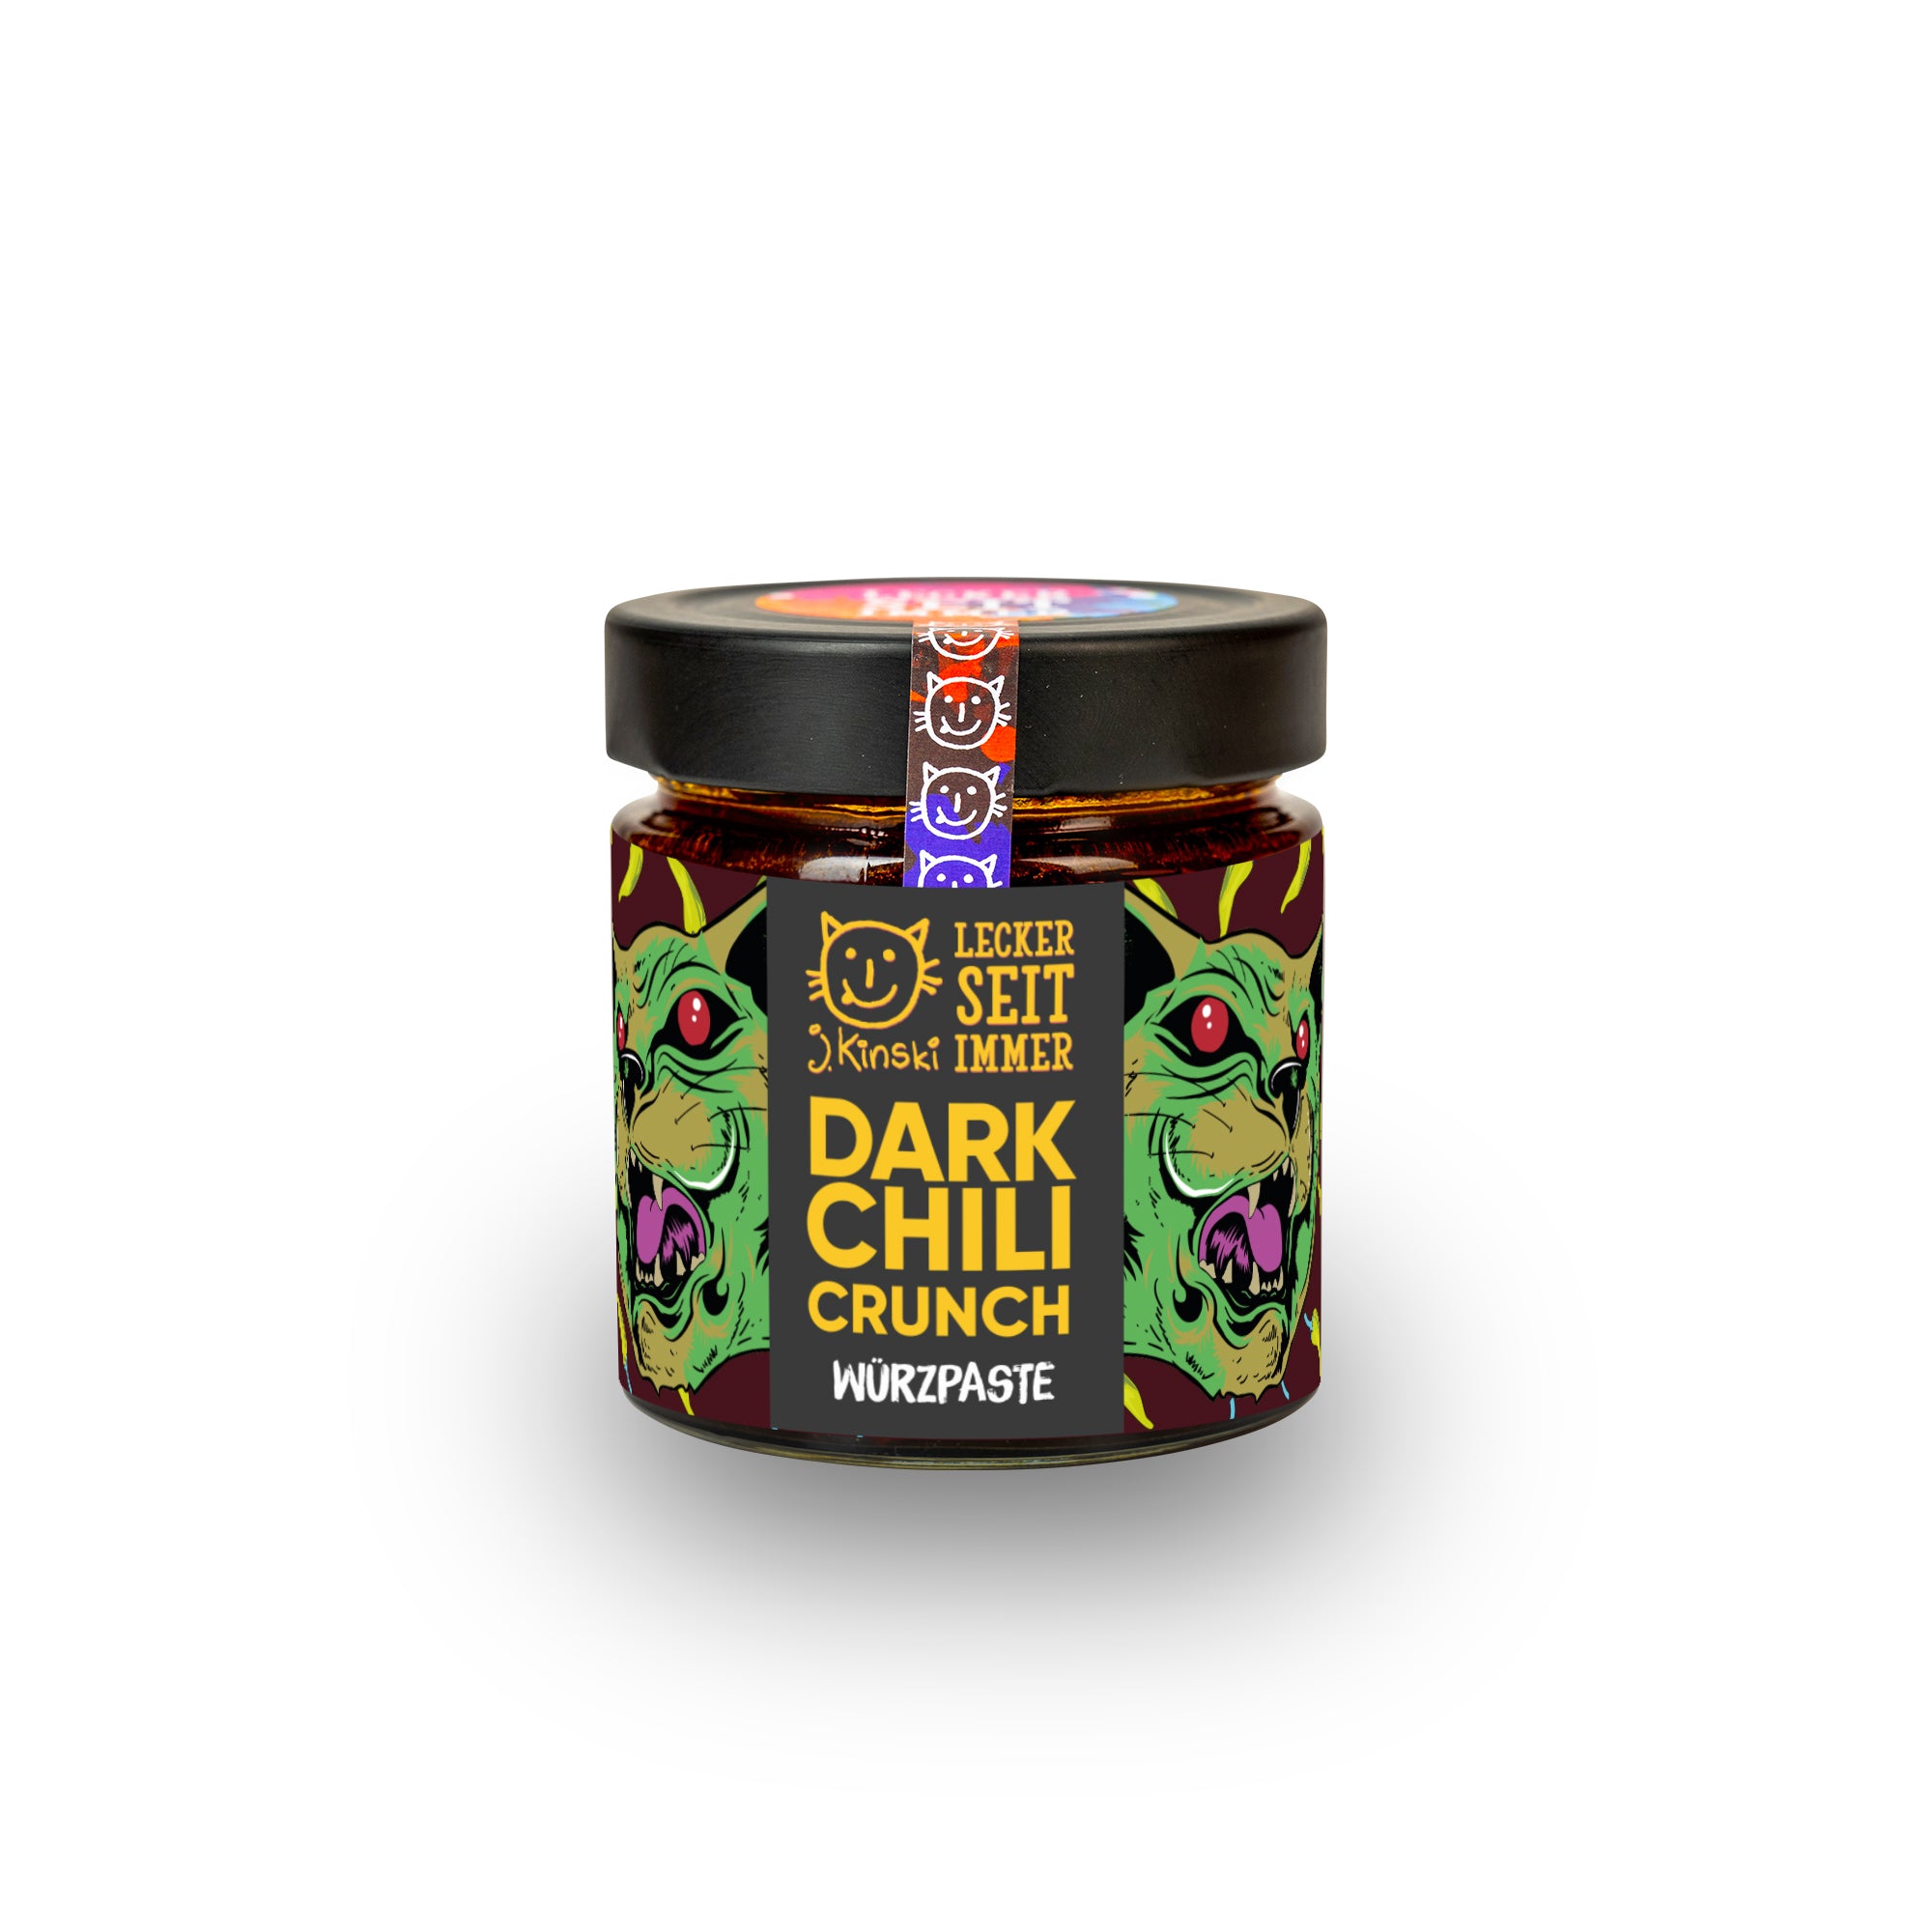 Bio Dark Chili Crunch vegan